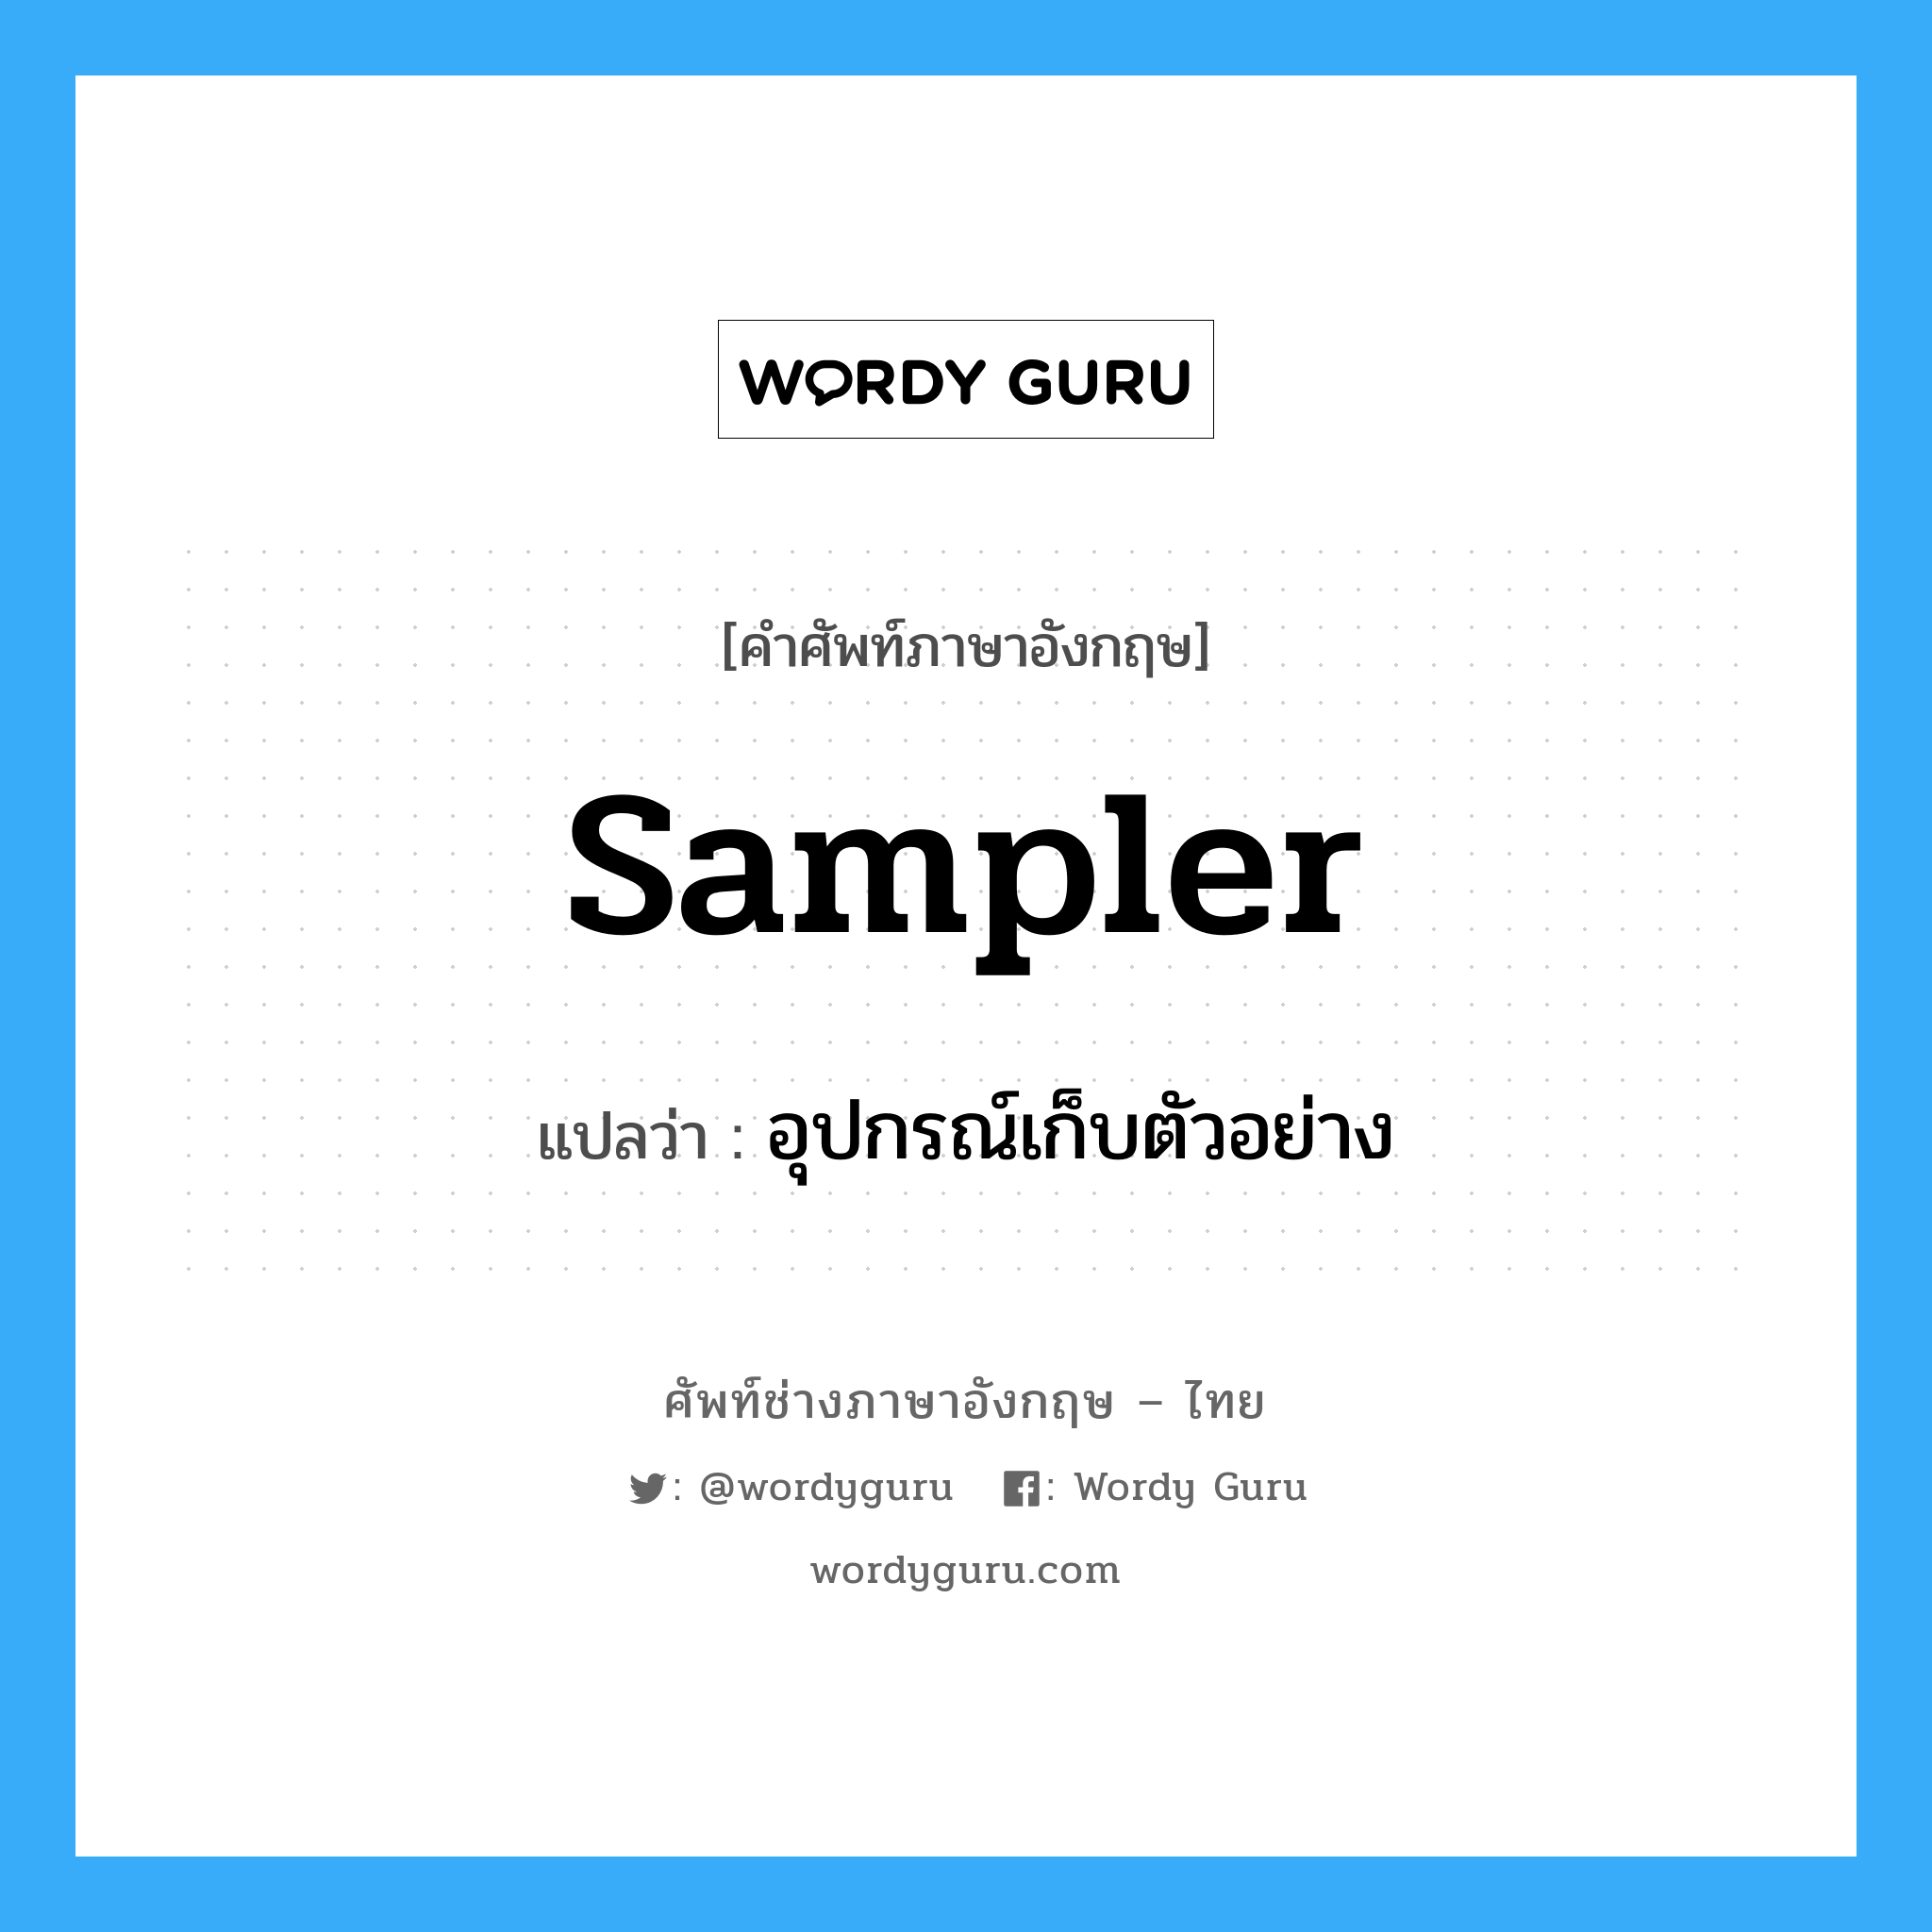 sampler แปลว่า?, คำศัพท์ช่างภาษาอังกฤษ - ไทย sampler คำศัพท์ภาษาอังกฤษ sampler แปลว่า อุปกรณ์เก็บตัวอย่าง